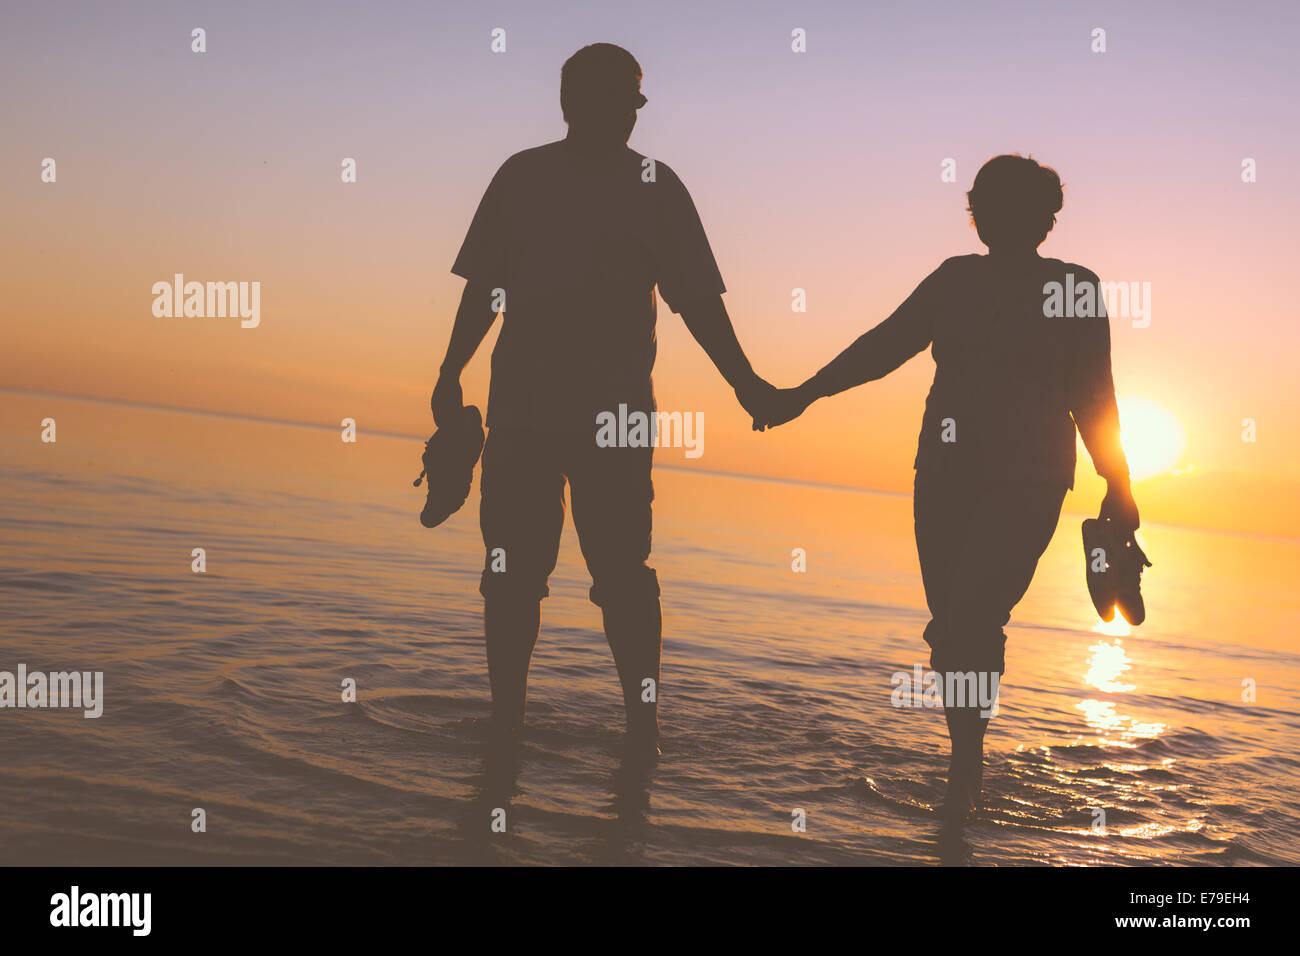 Happy senior couple silhouettes sur la plage Banque D'Images